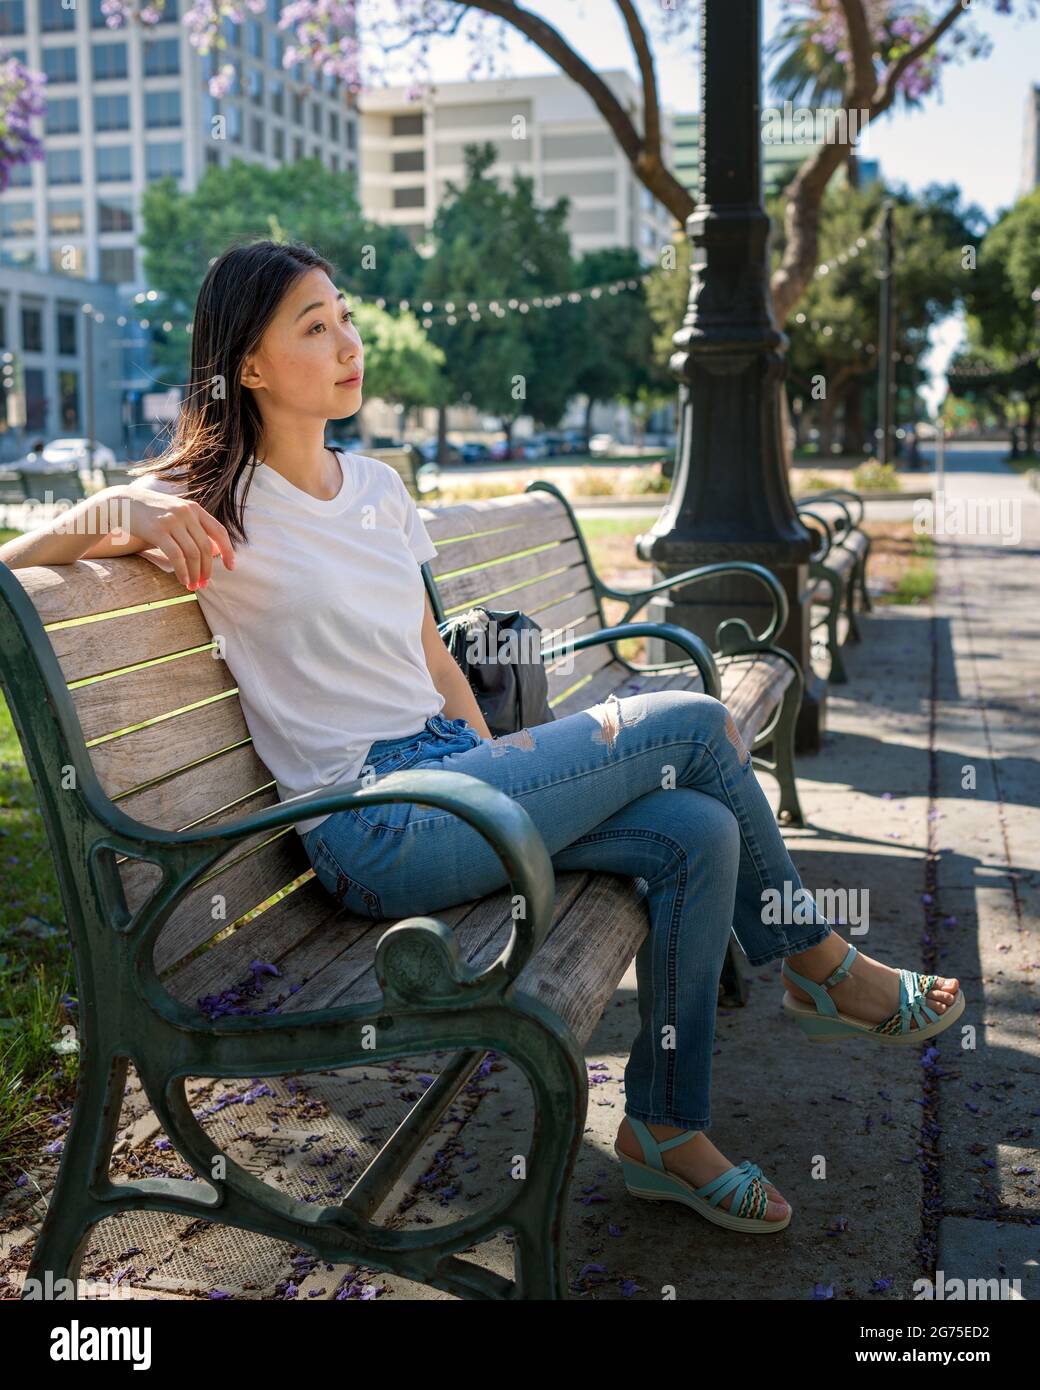 Jeune femme asiatique assise sur un banc de parc sous un arbre Jacaranda Banque D'Images